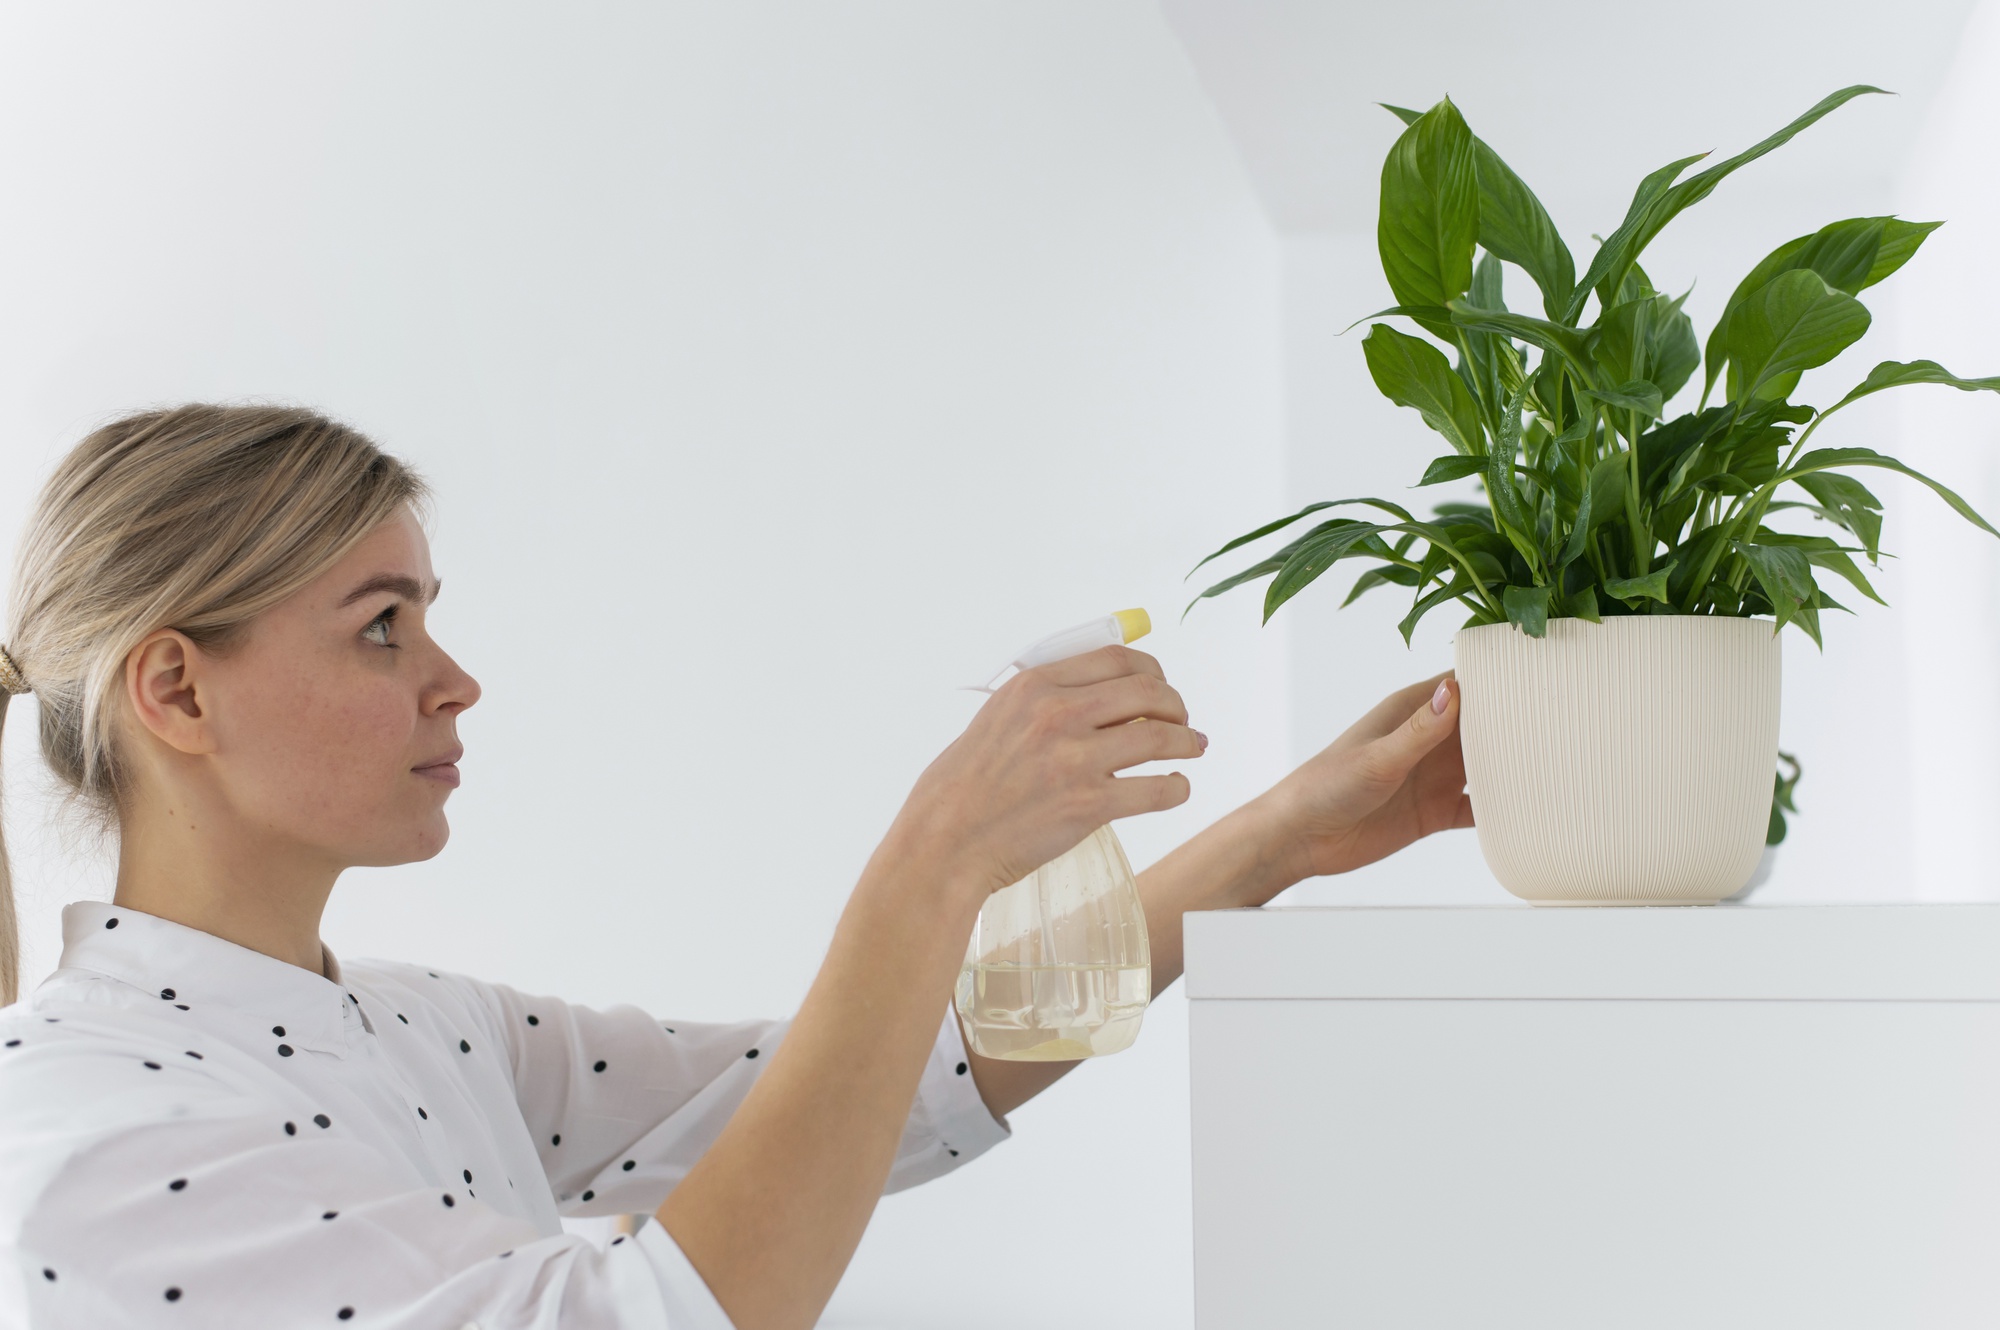 Top 7 Indoor Plants That Provide Oxygen